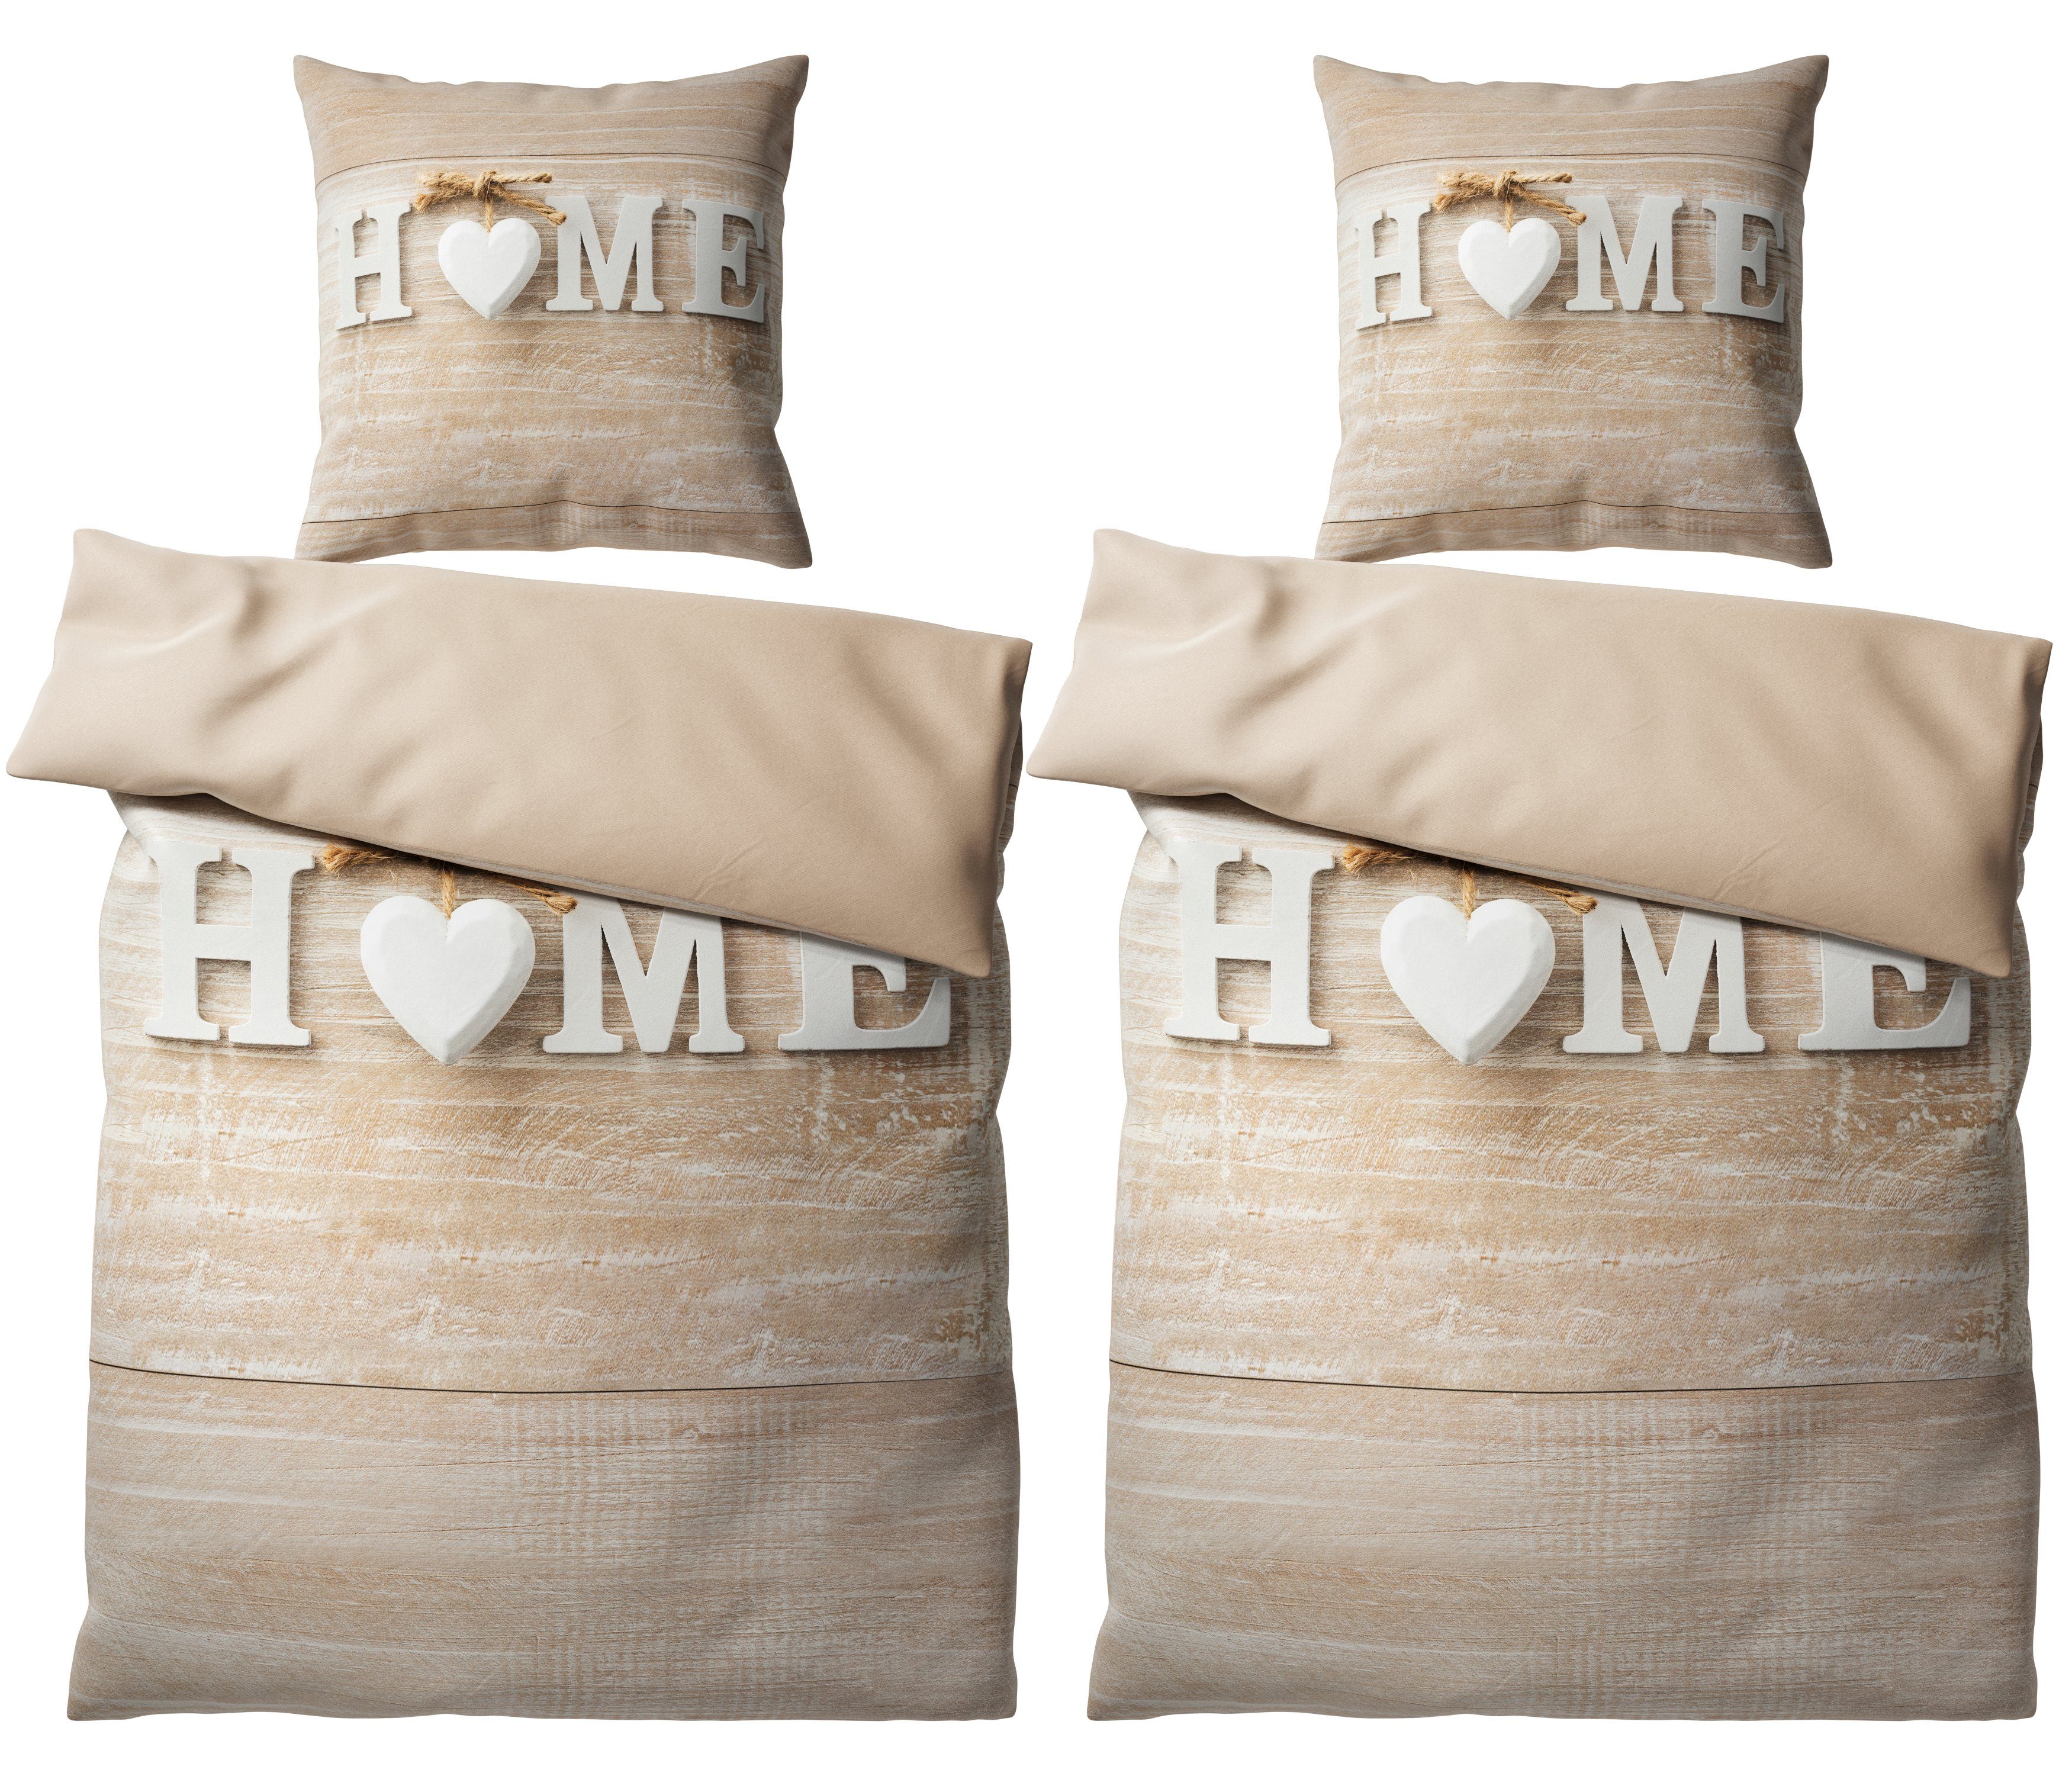 Bettwäsche Home 135x200 cm, Bettbezug und Kissenbezug, Sanilo, Baumwolle, 4 teilig